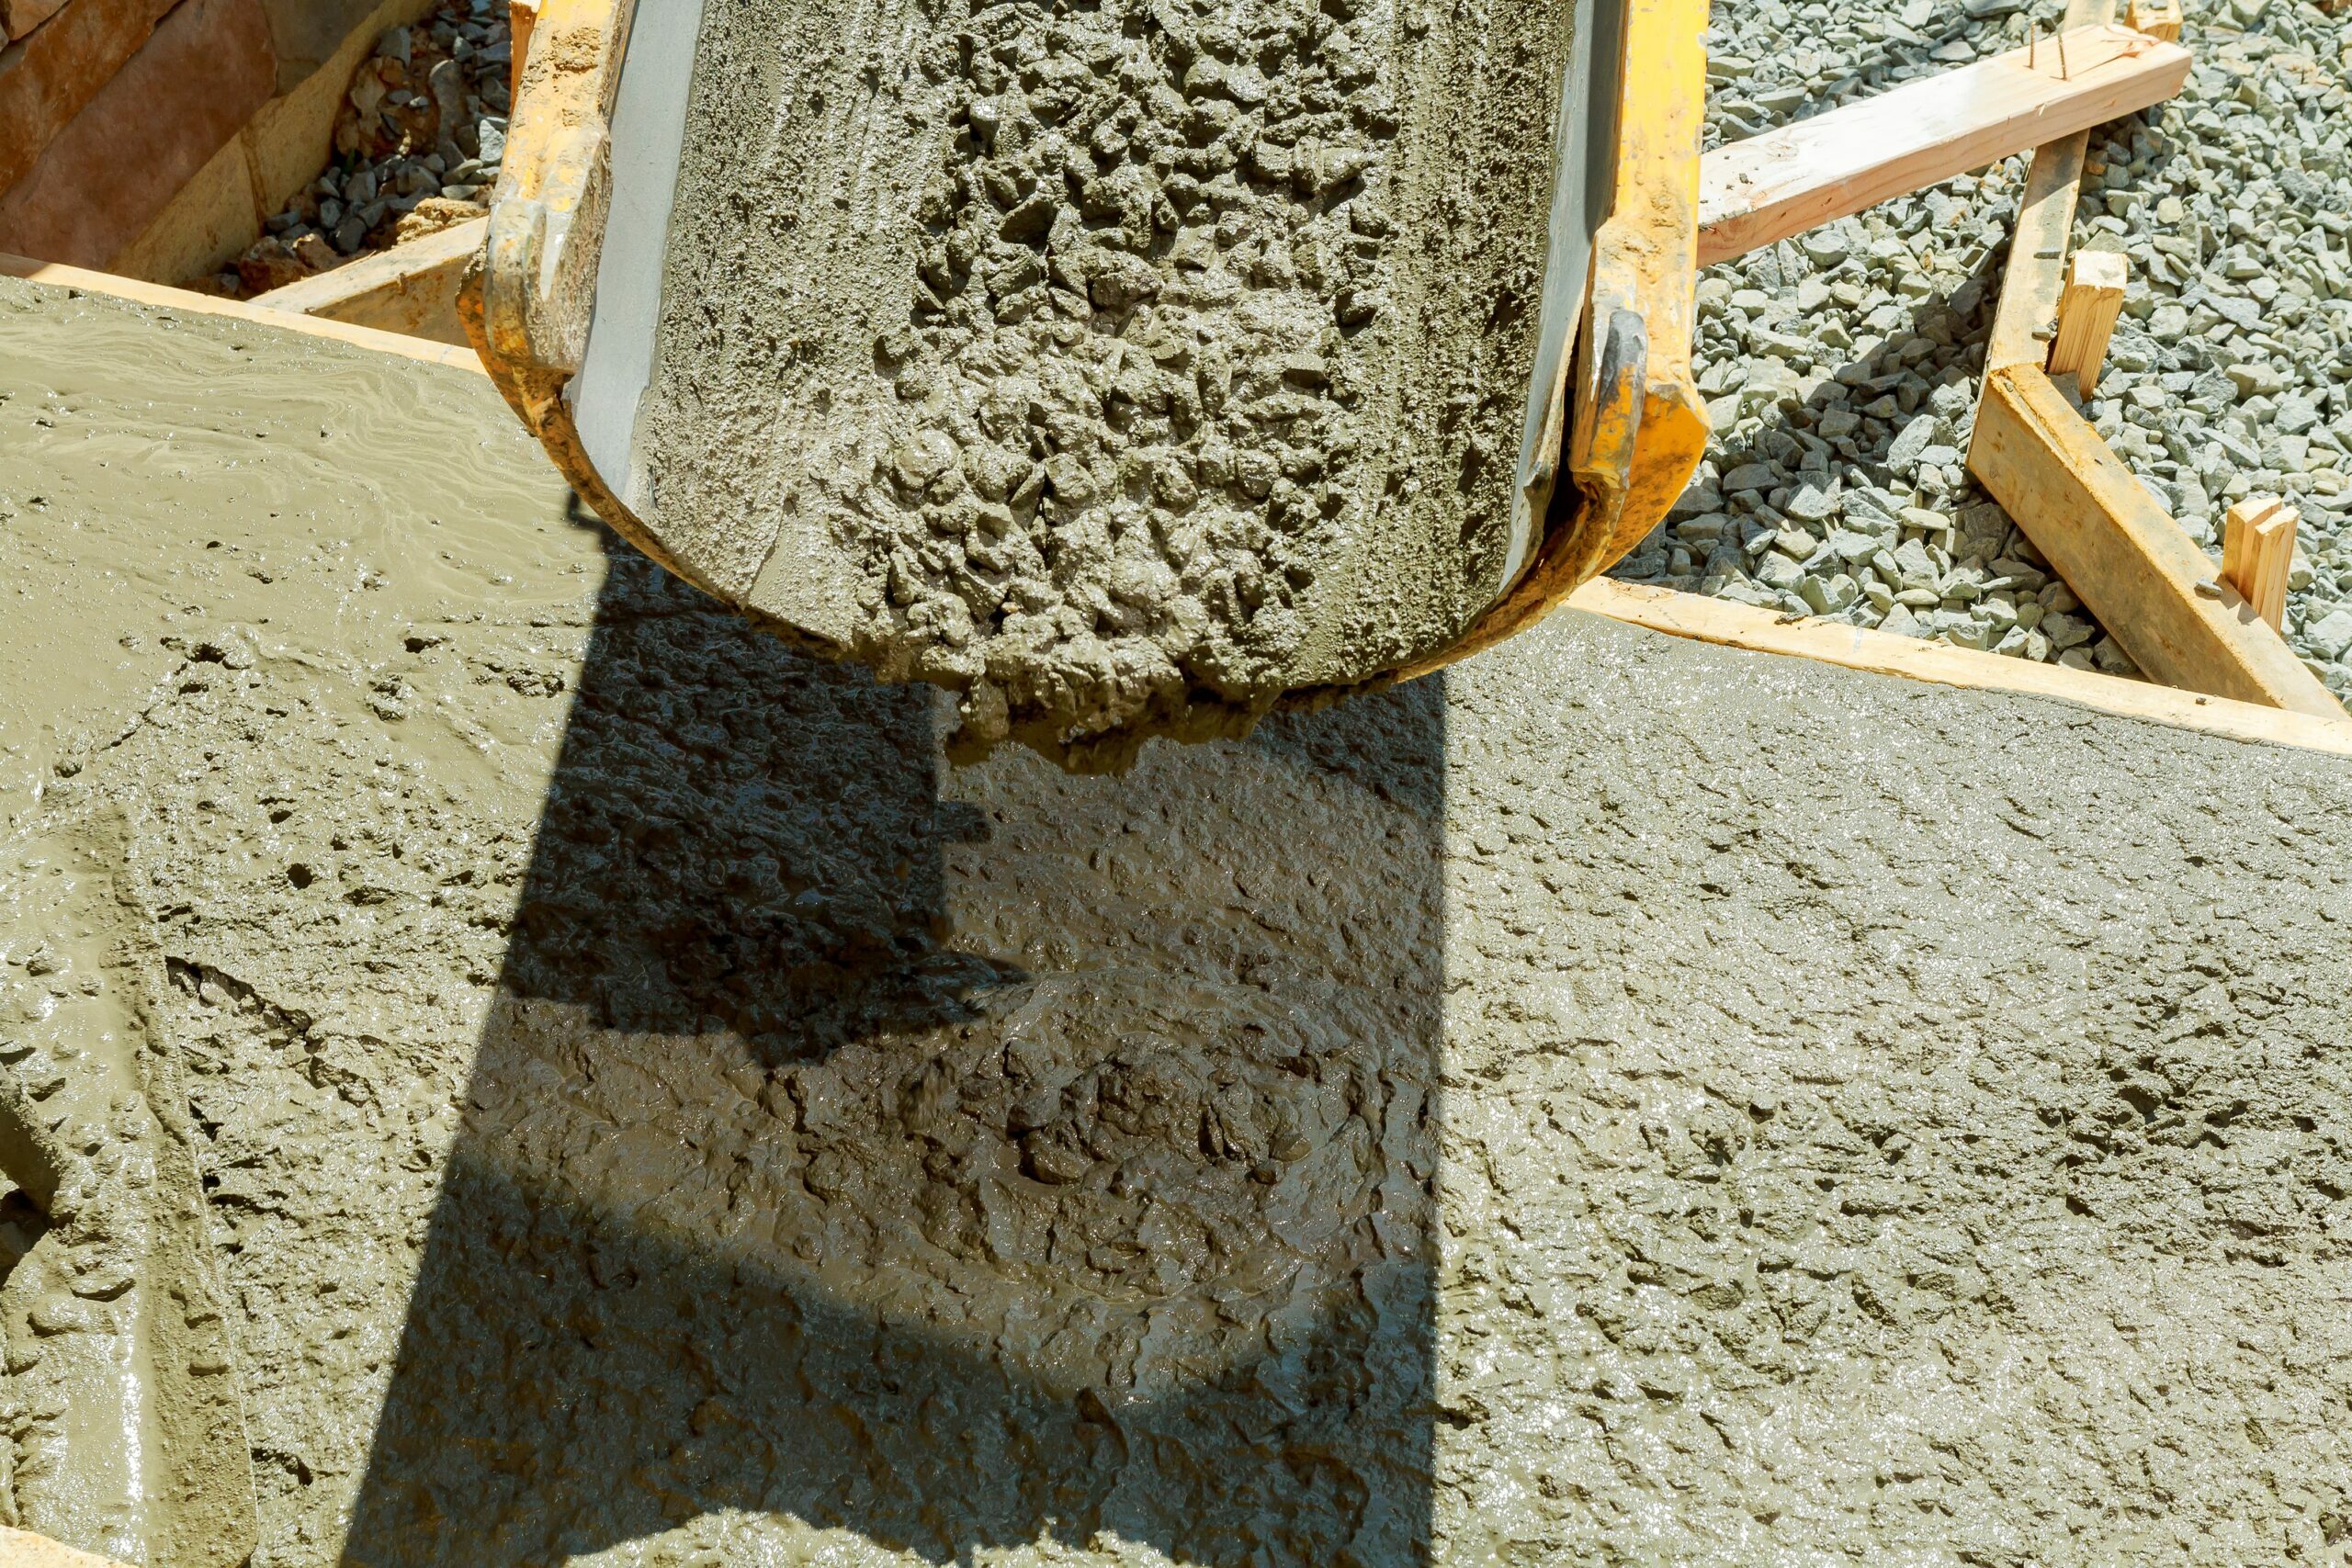 Pouring cement concrete process to apartment building